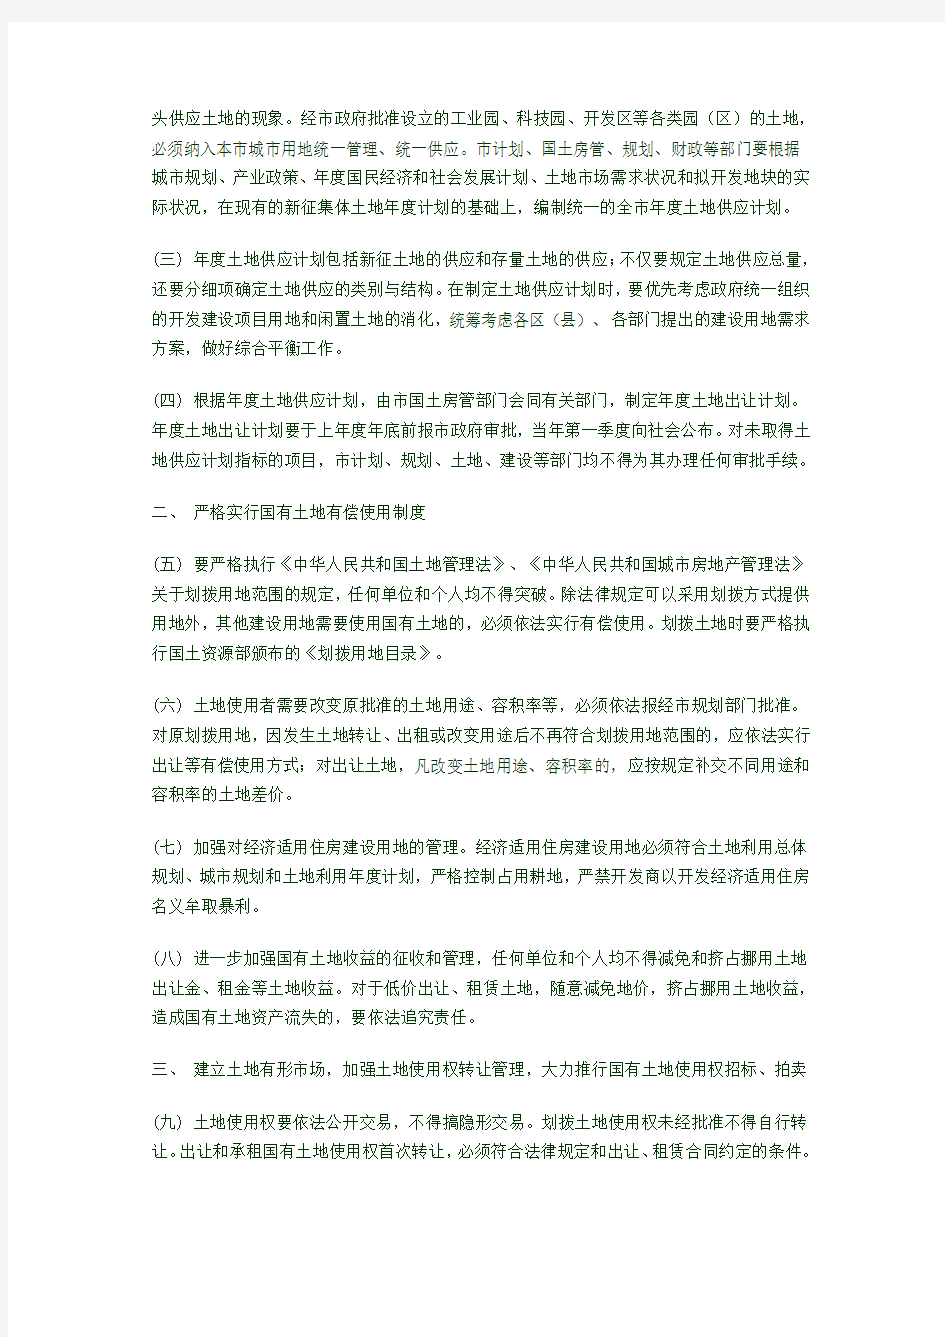 北京市人民政府批转市国土房管局关于加强国有土地资产管理建立土地储备制度意见的通知